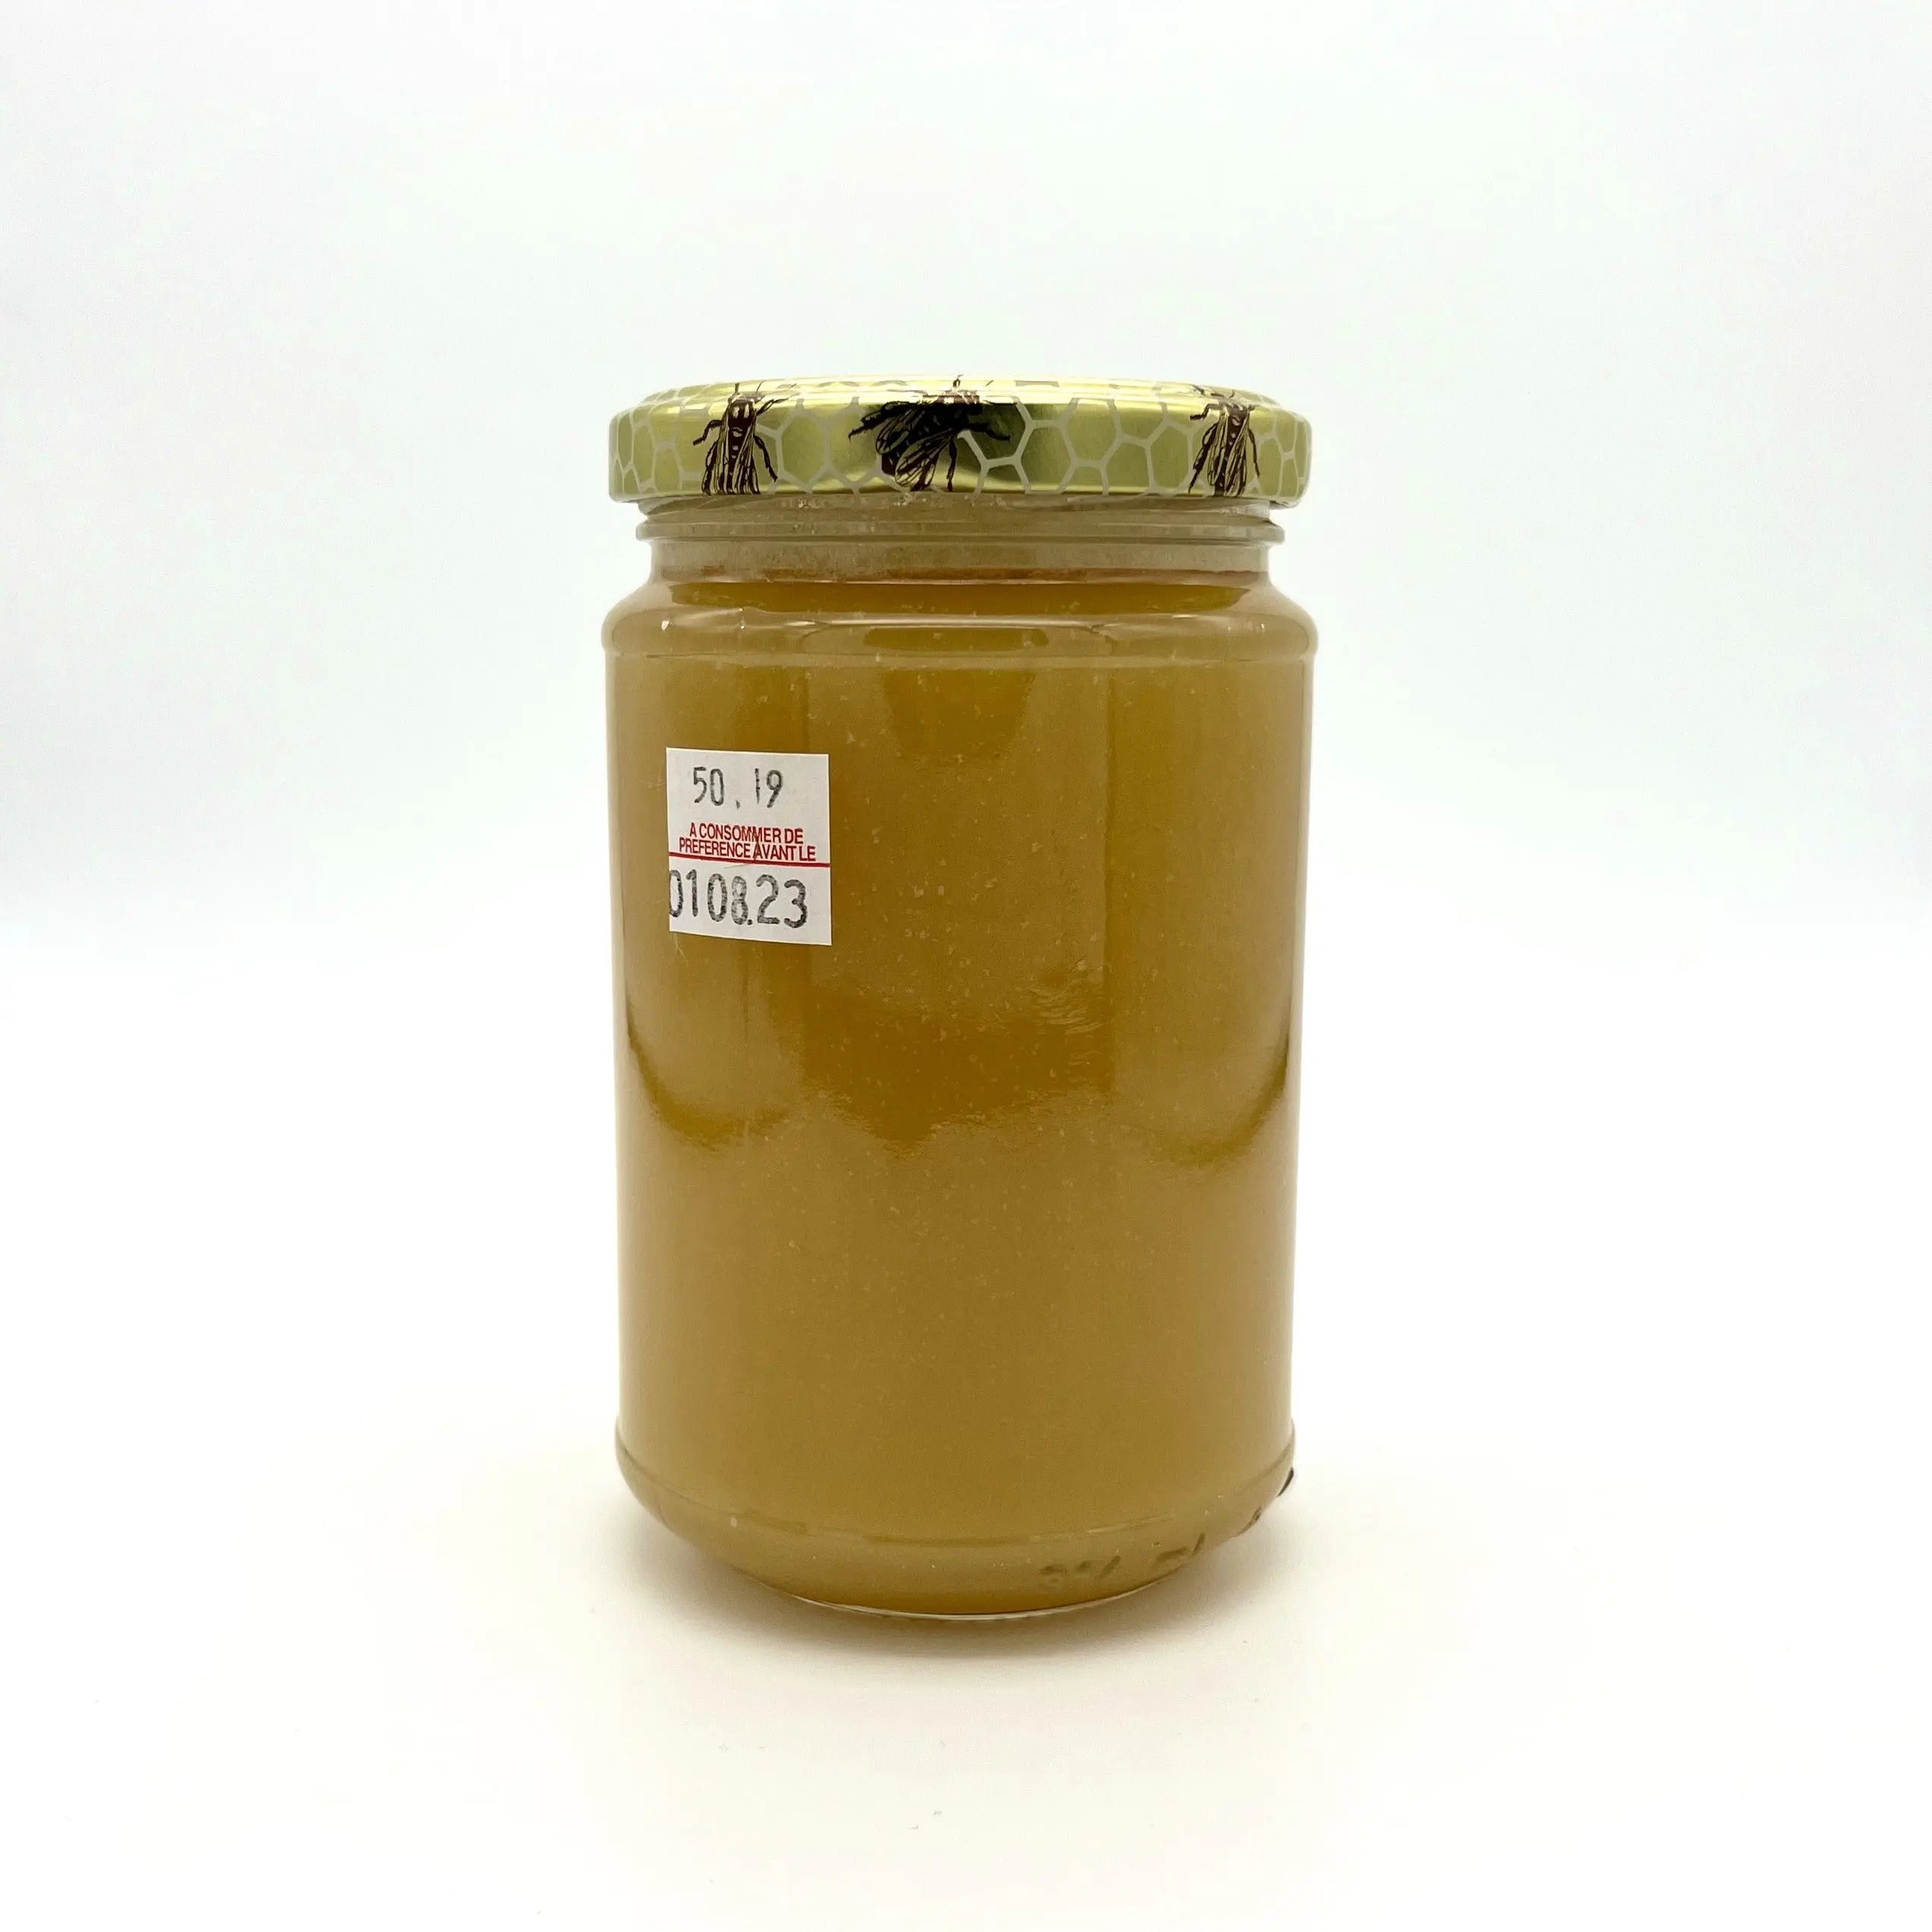 Miel traditionnel de Garrigue, famille GANDIN, apiculteurs